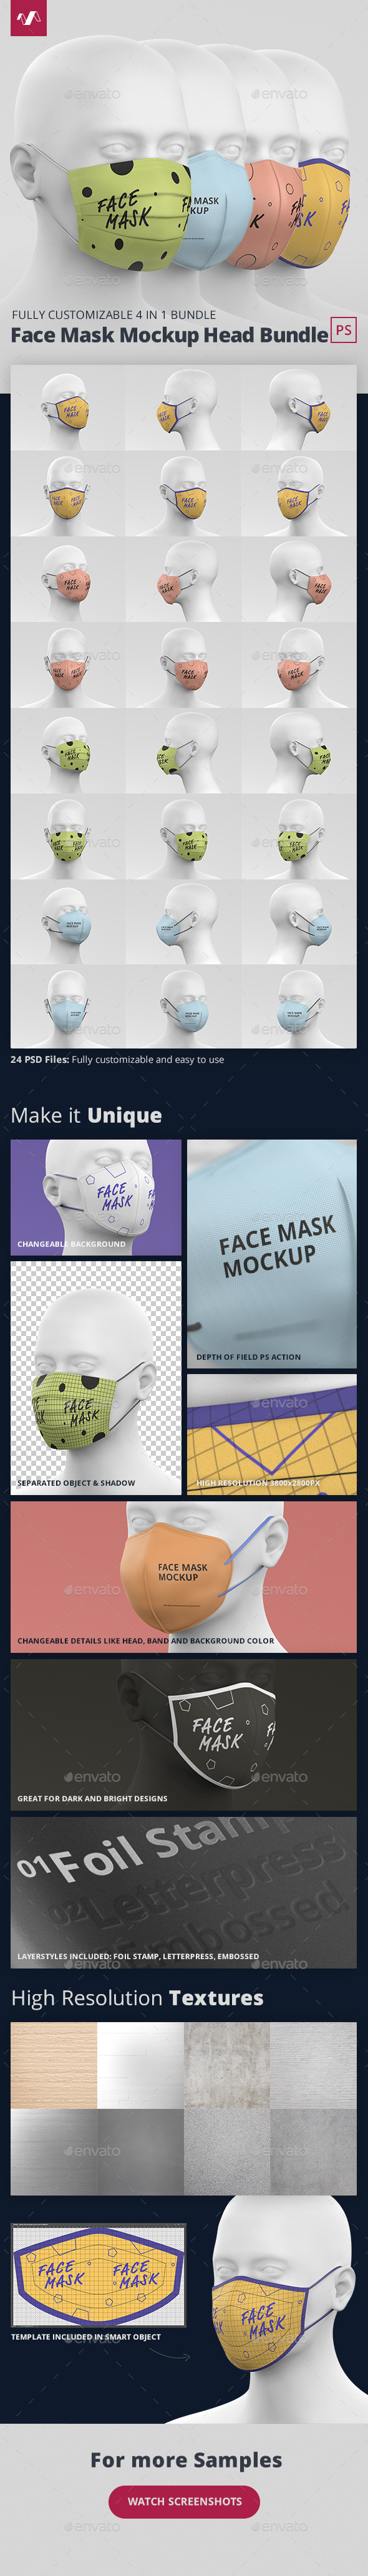 [DOWNLOAD]Face Mask Mockup Heads Bundle